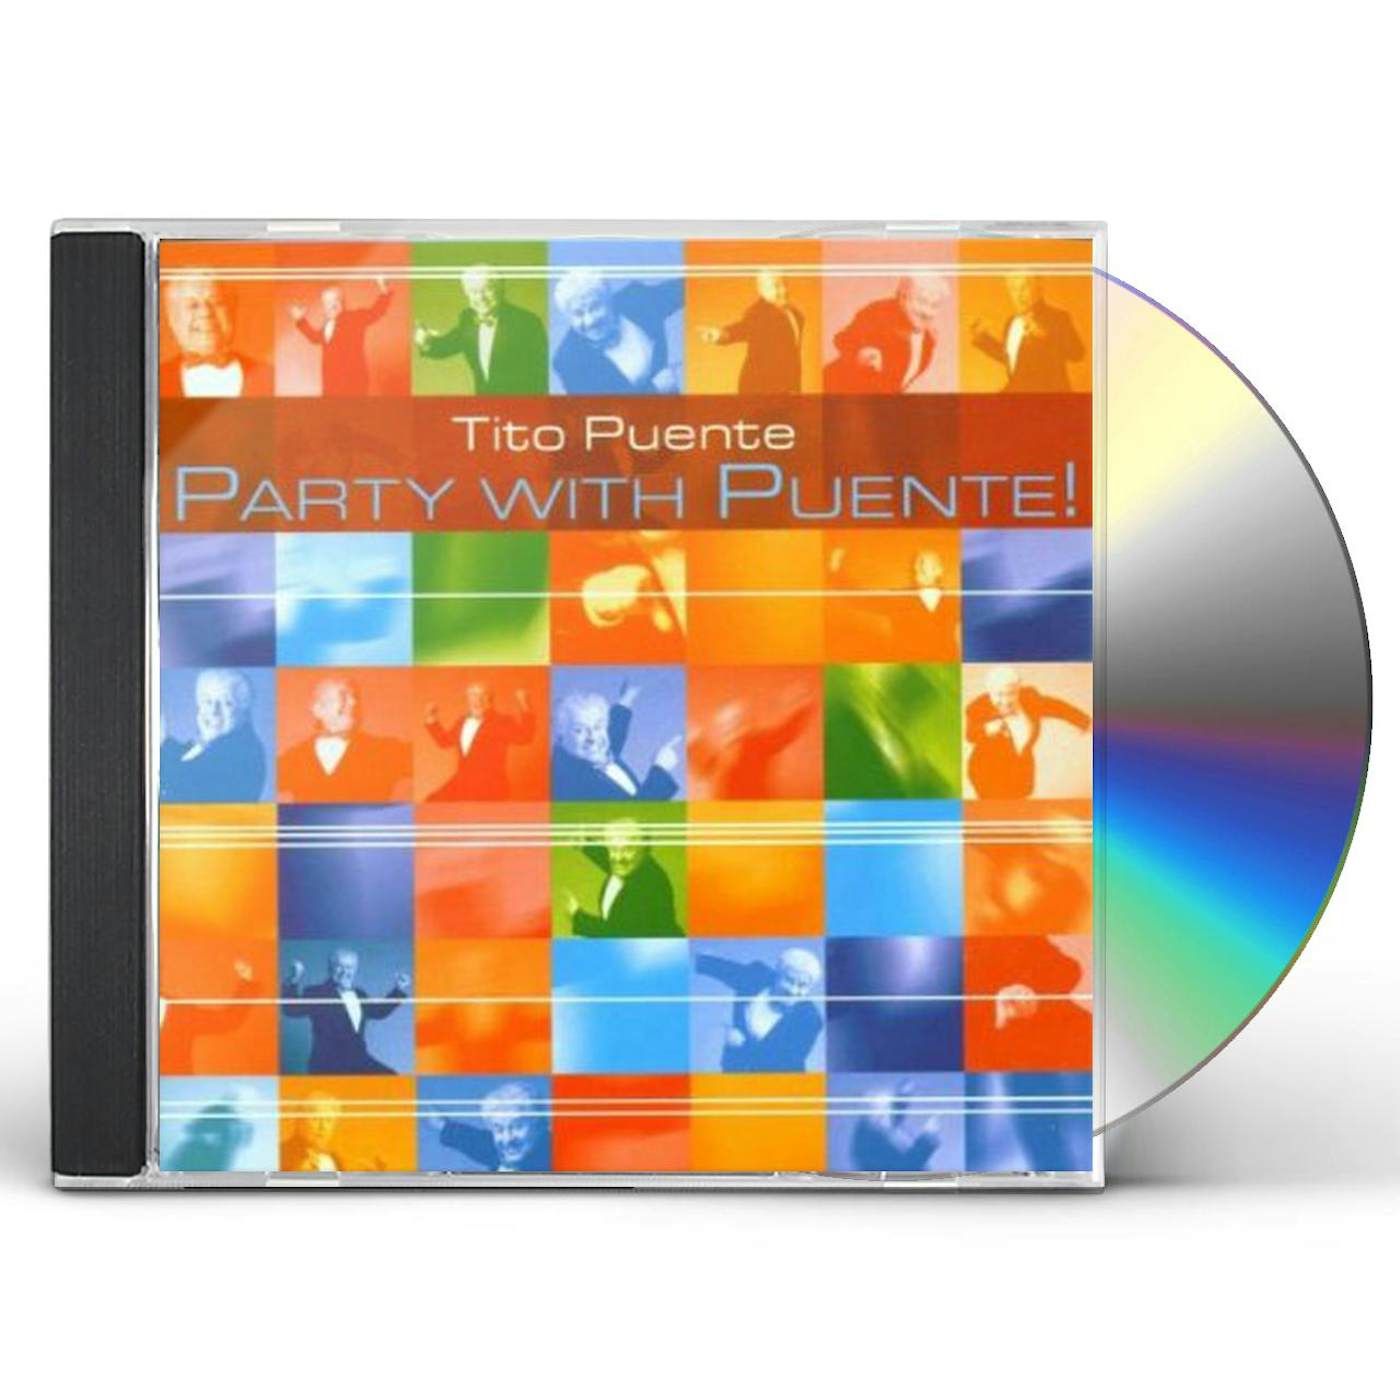 Tito Puente PARTY WITH TITO CD